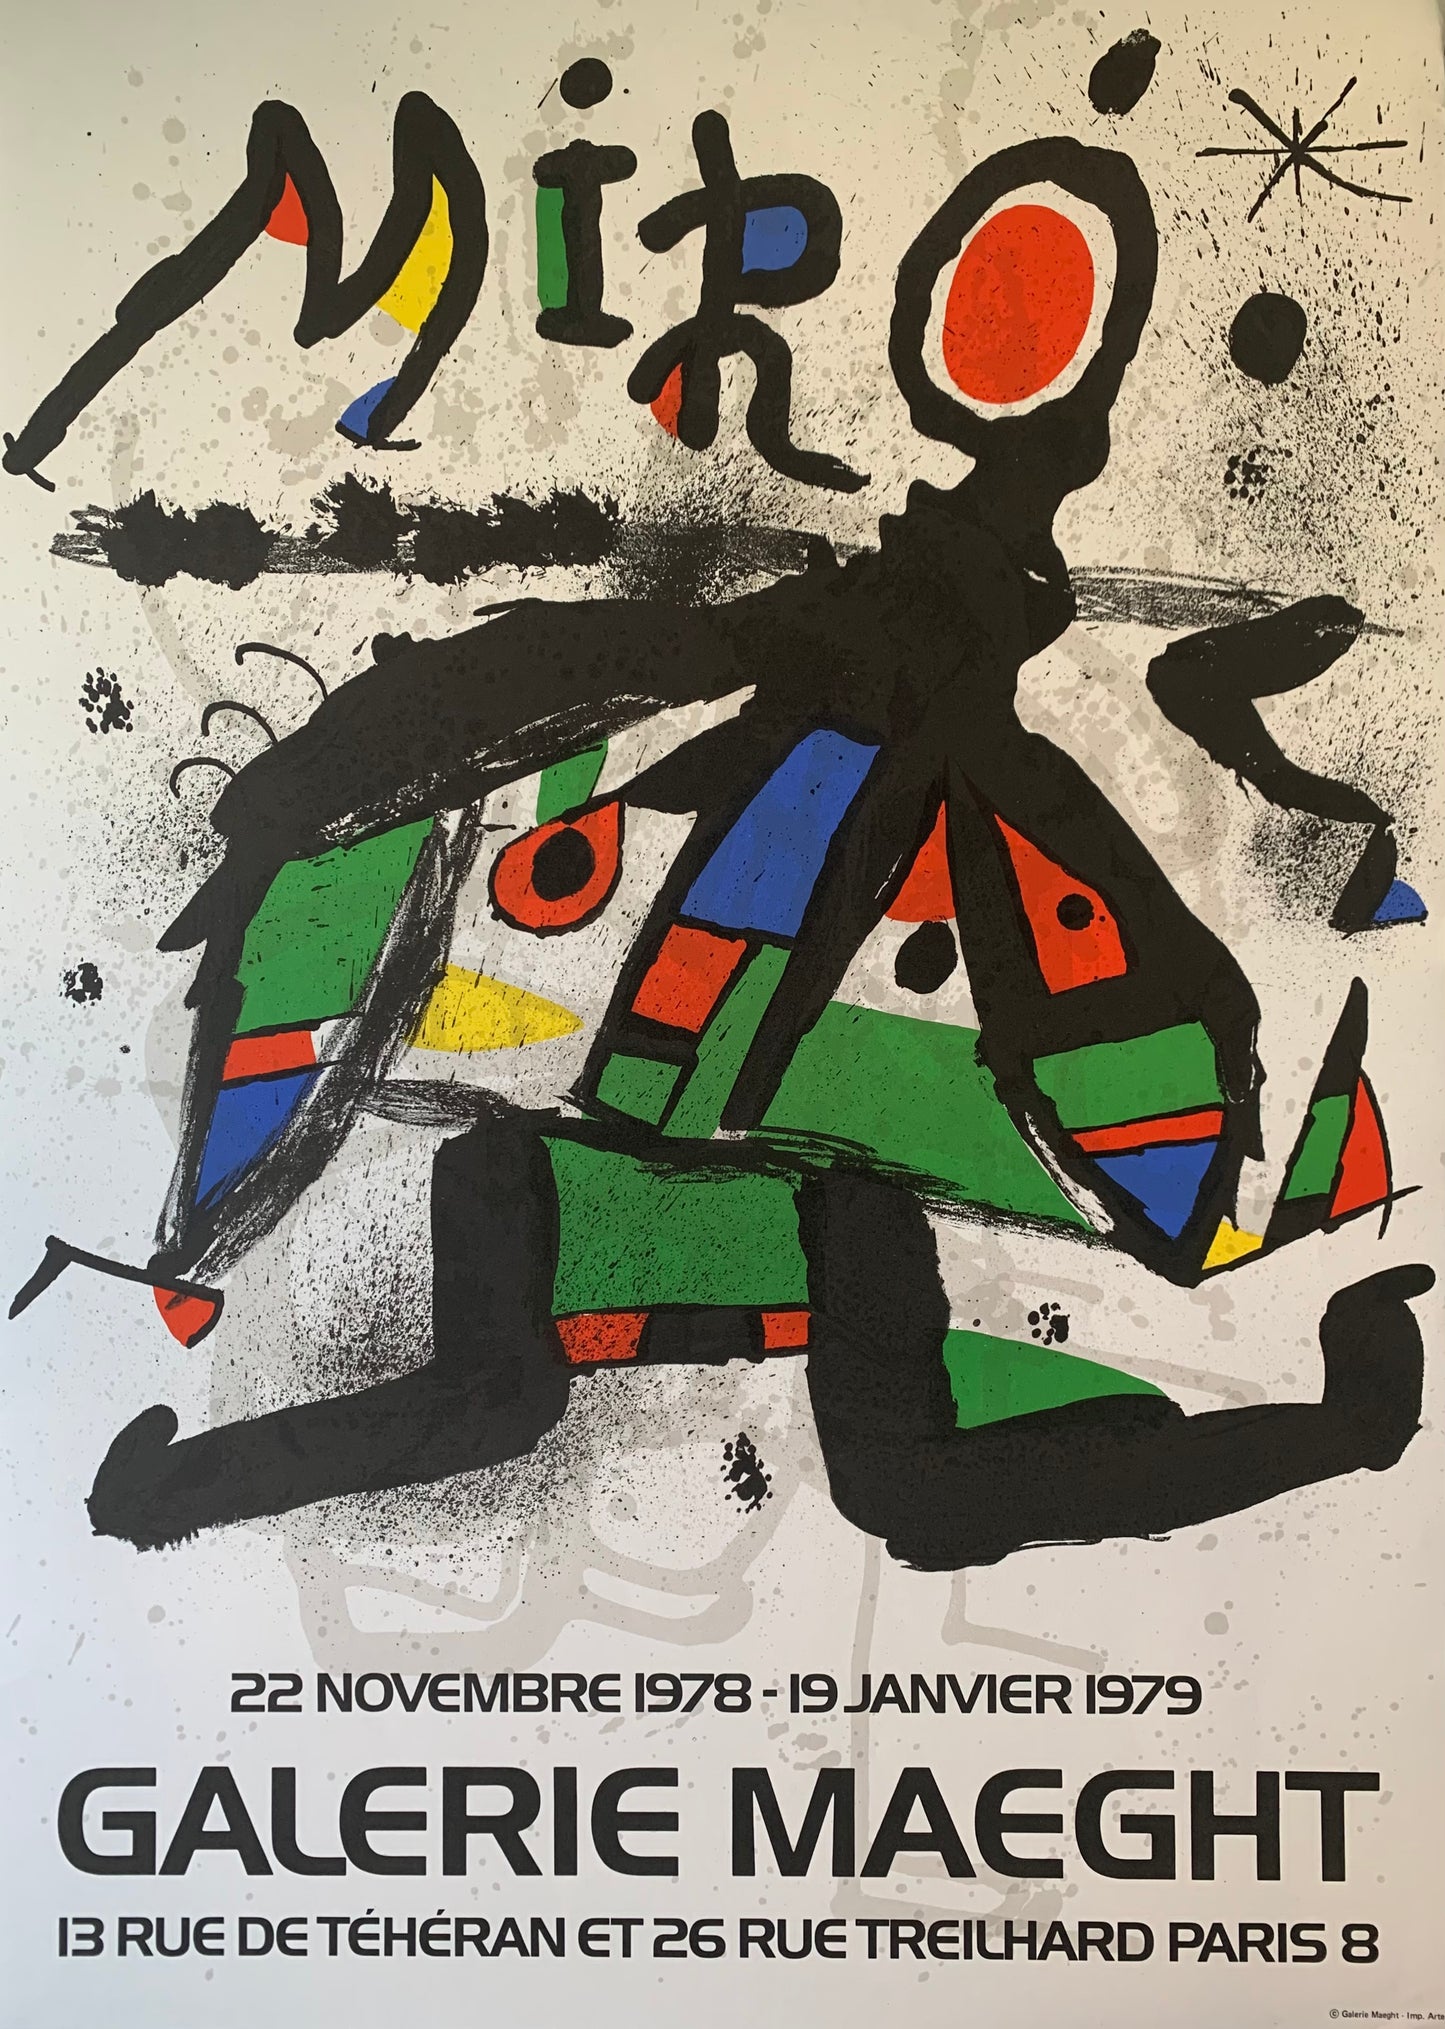 Joan Miró. “Galerie Maeght”, 1978